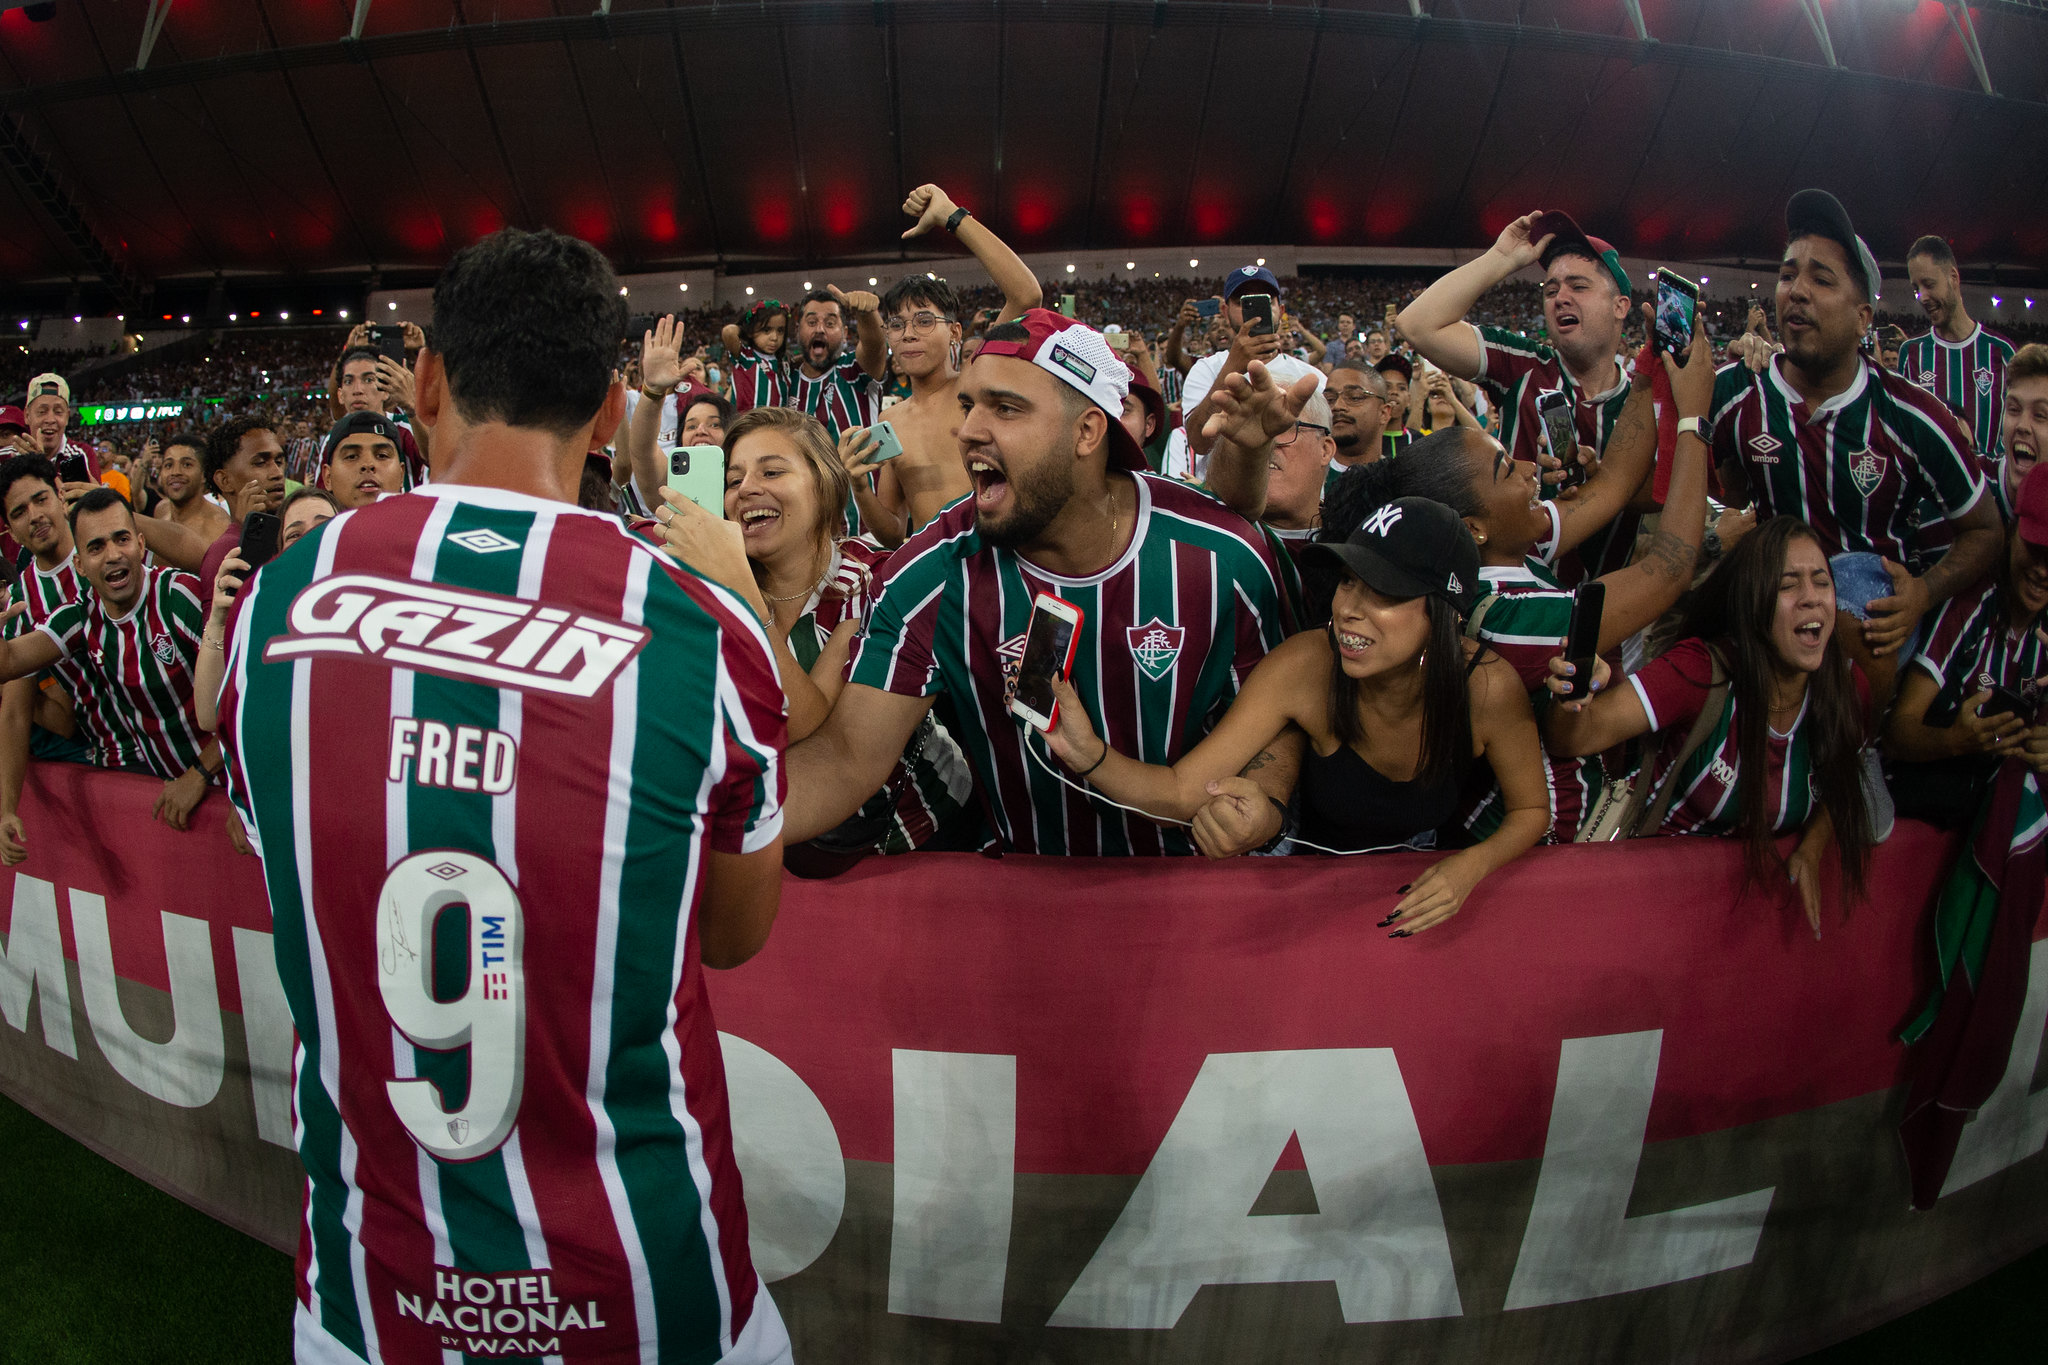 Centroavante do Tricolor das Laranjeiras atuou como adm do clube e, em interação com torcedores, pediu ingressos de time visitante